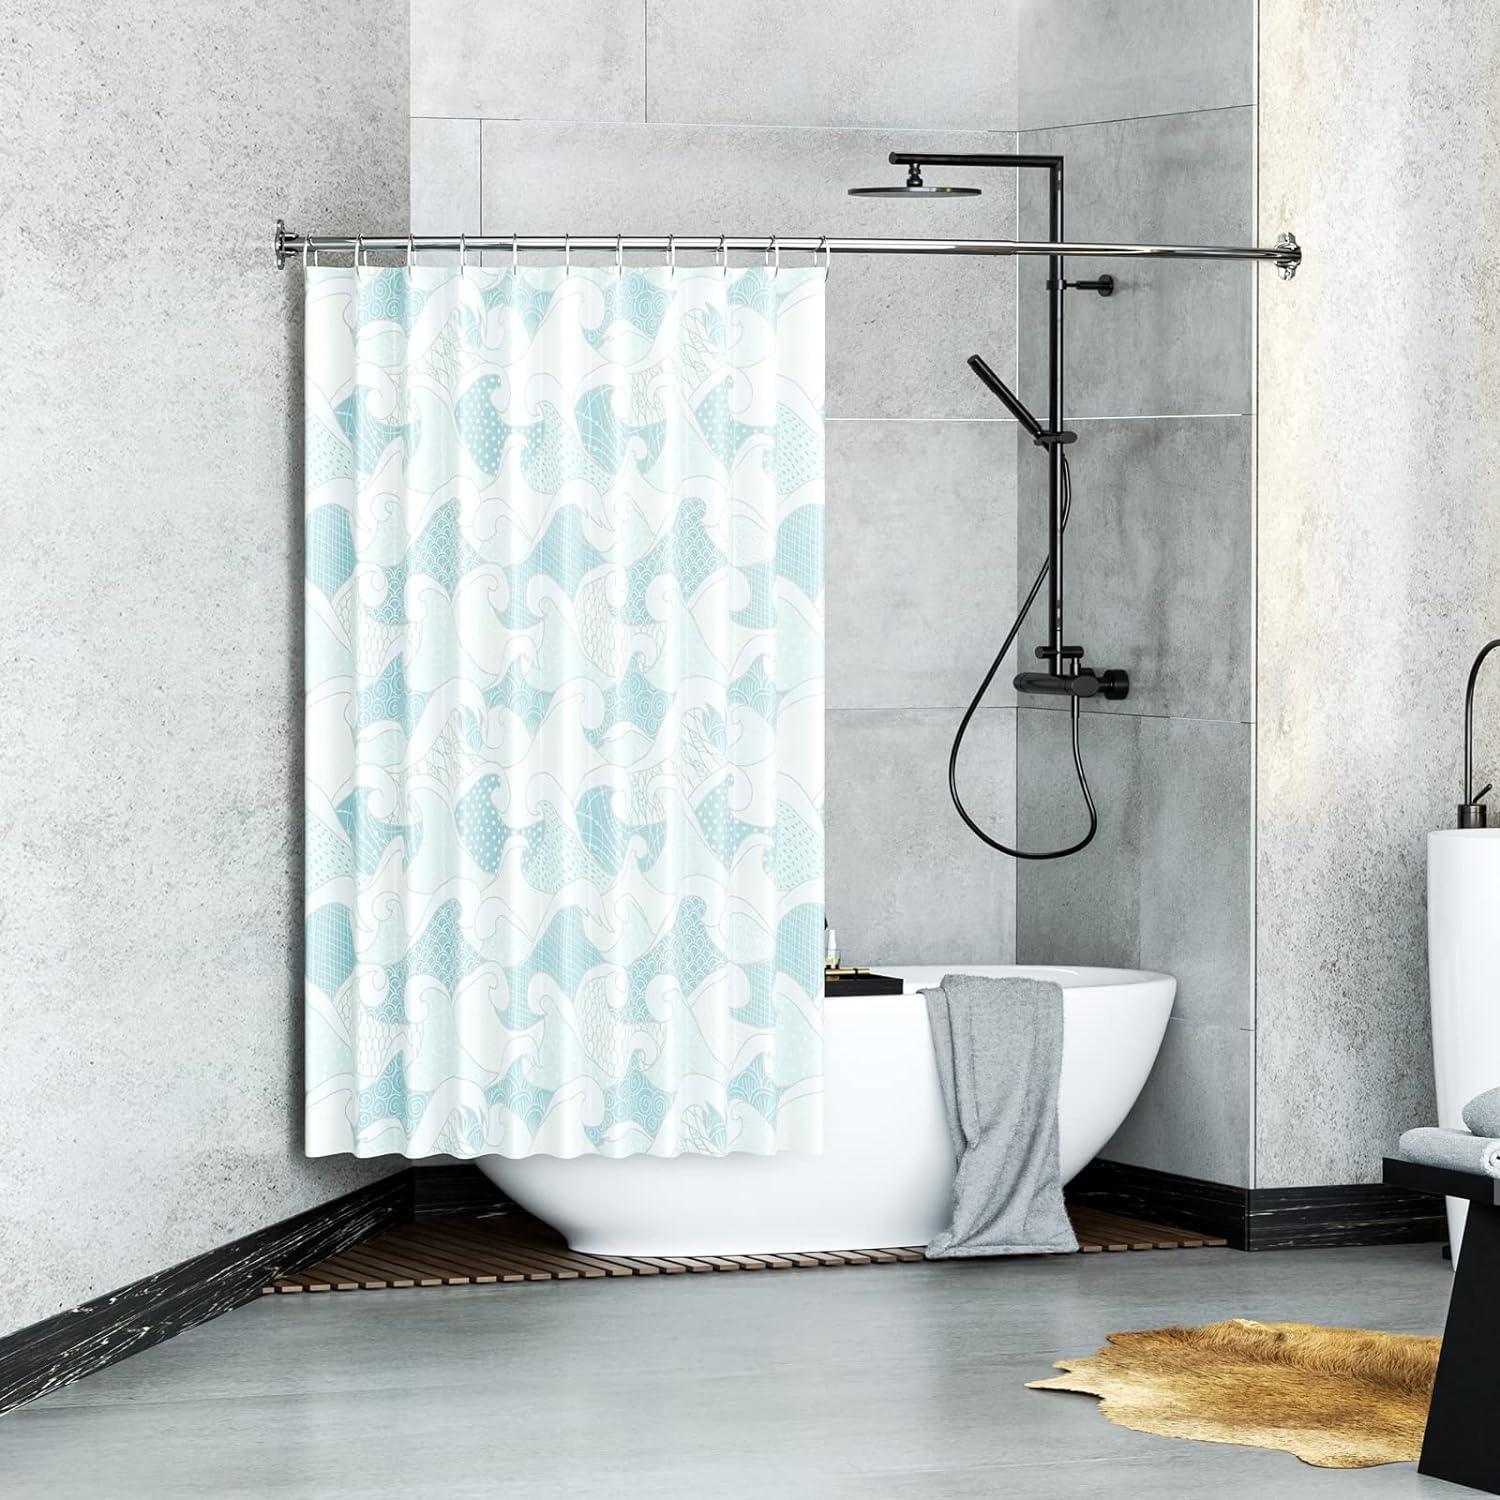 Barra de cortina de ducha curva, ajustable de 43 a 72 pulgadas, barra de  ducha curvada, resistente al óxido, diseño telescópico para baño, color